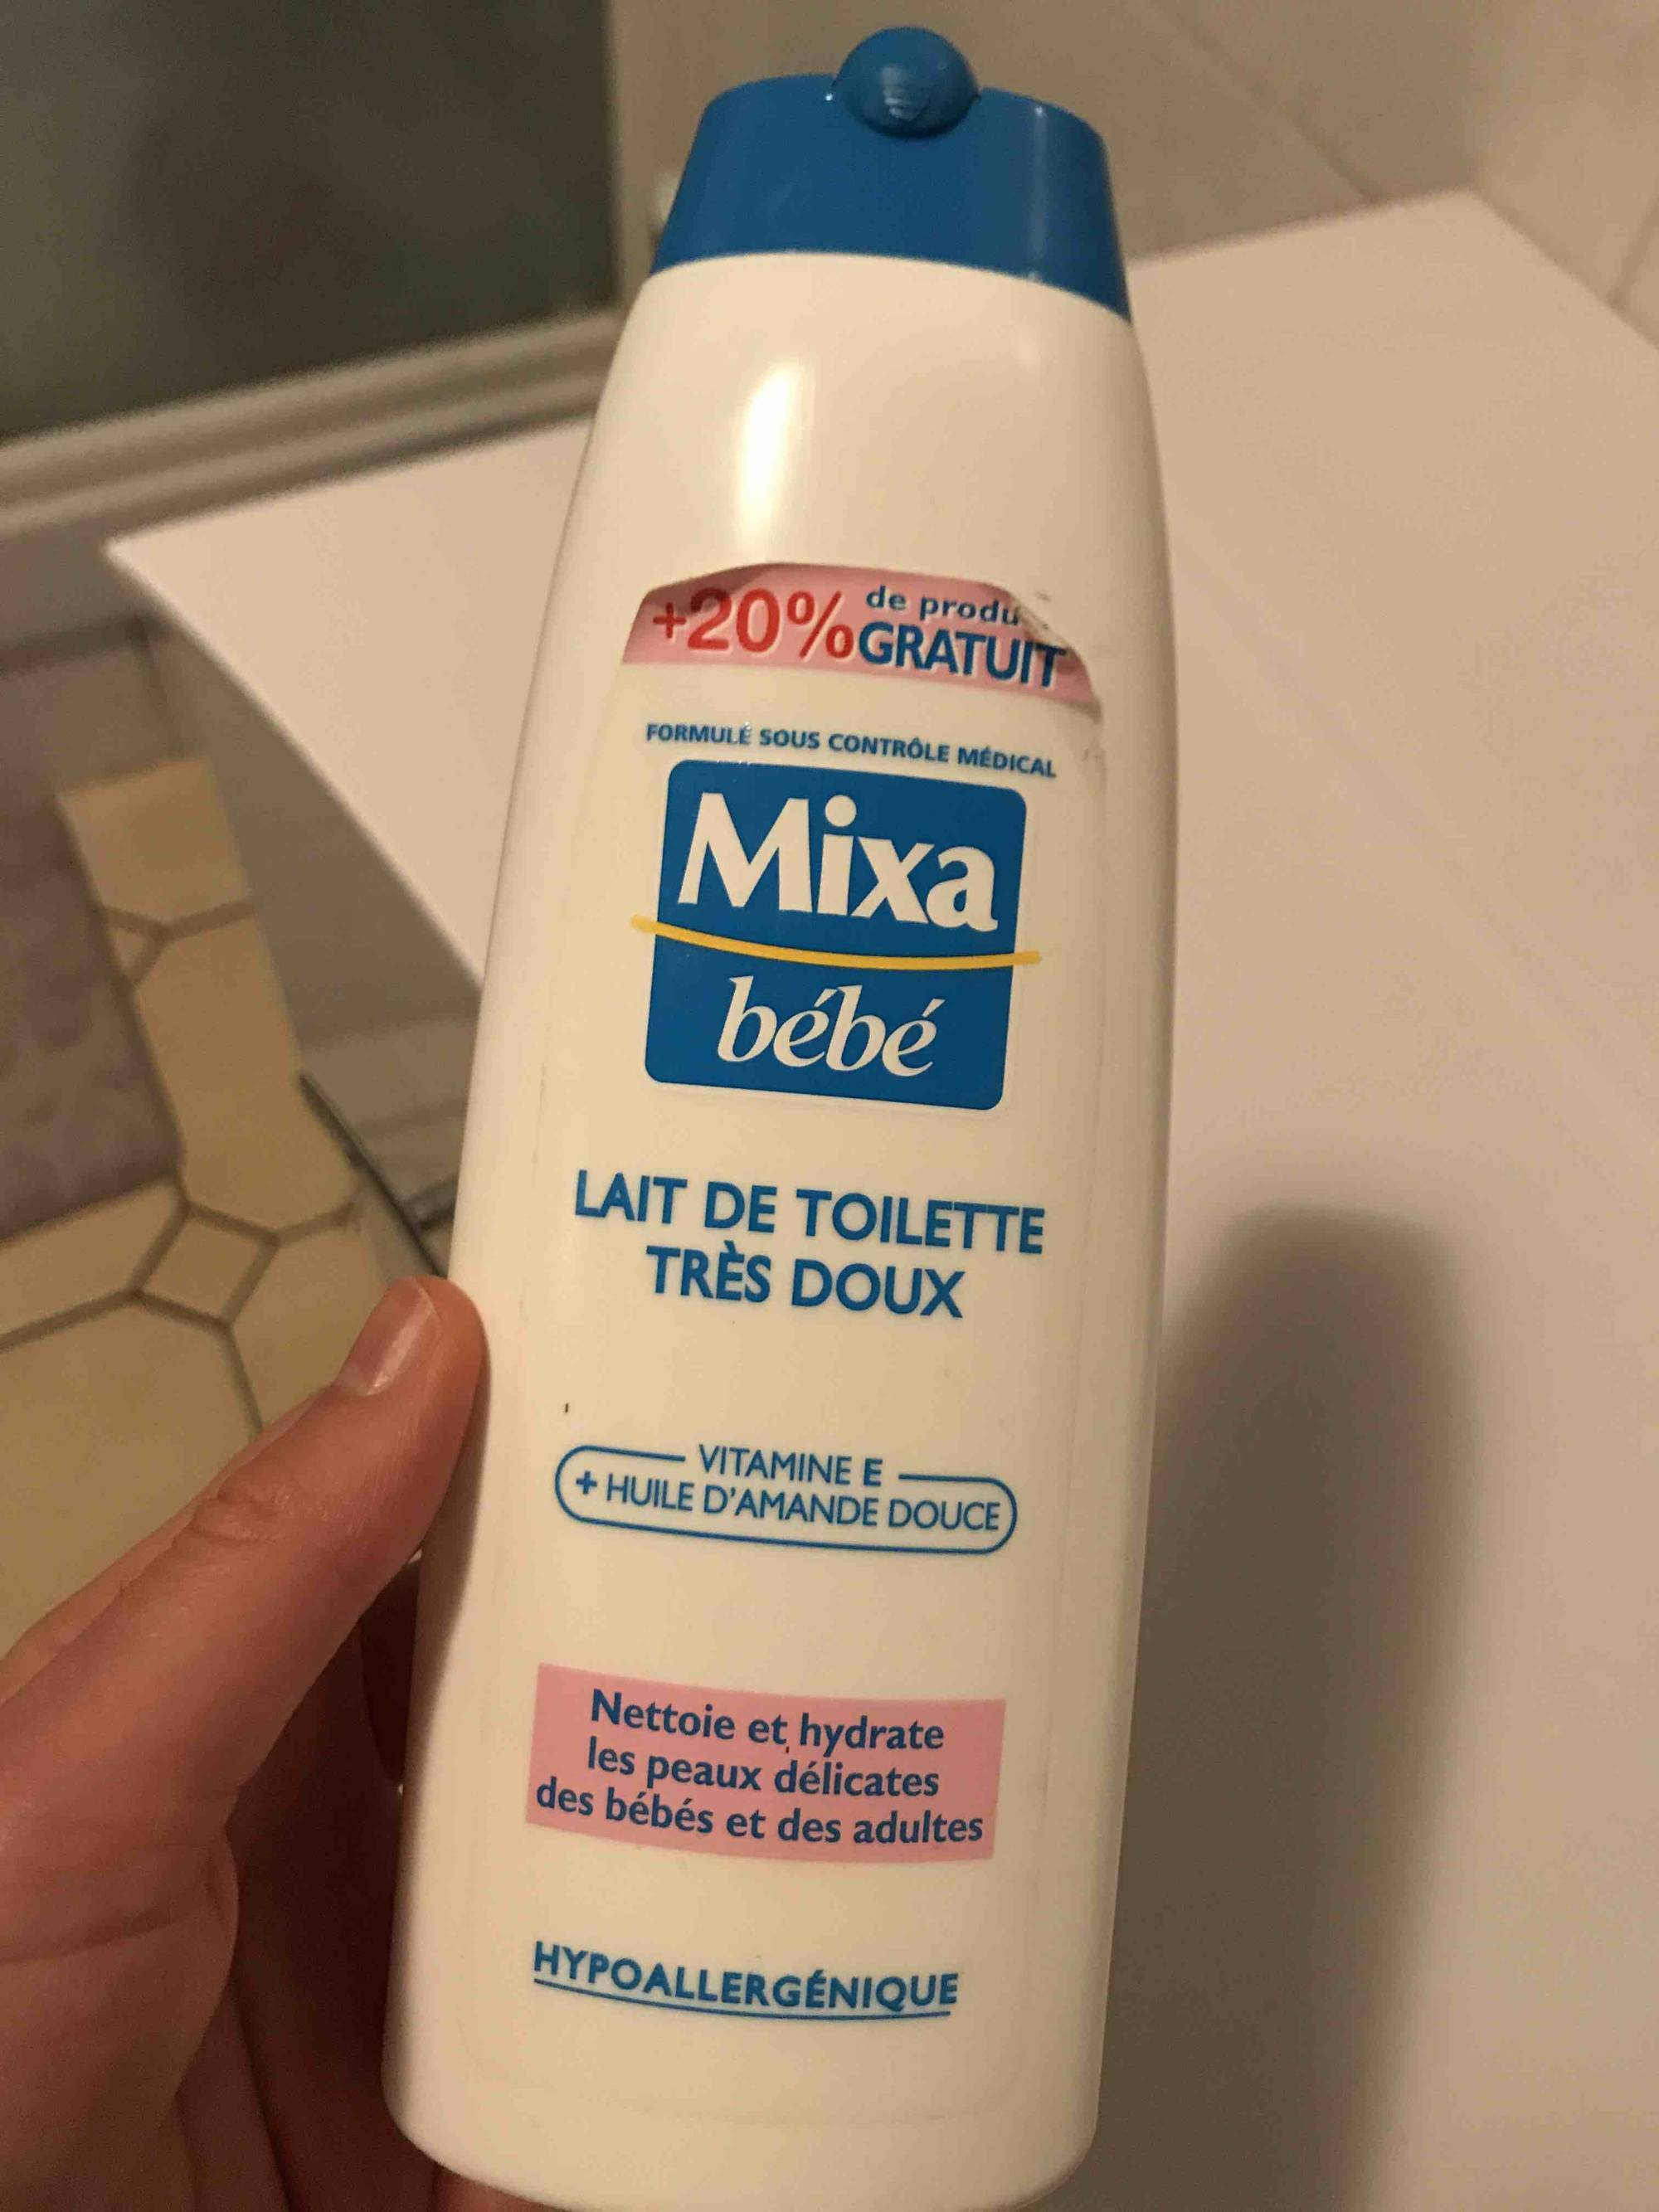 Composition MIXA Bébé - Lingettes au lait de toilette - UFC-Que Choisir